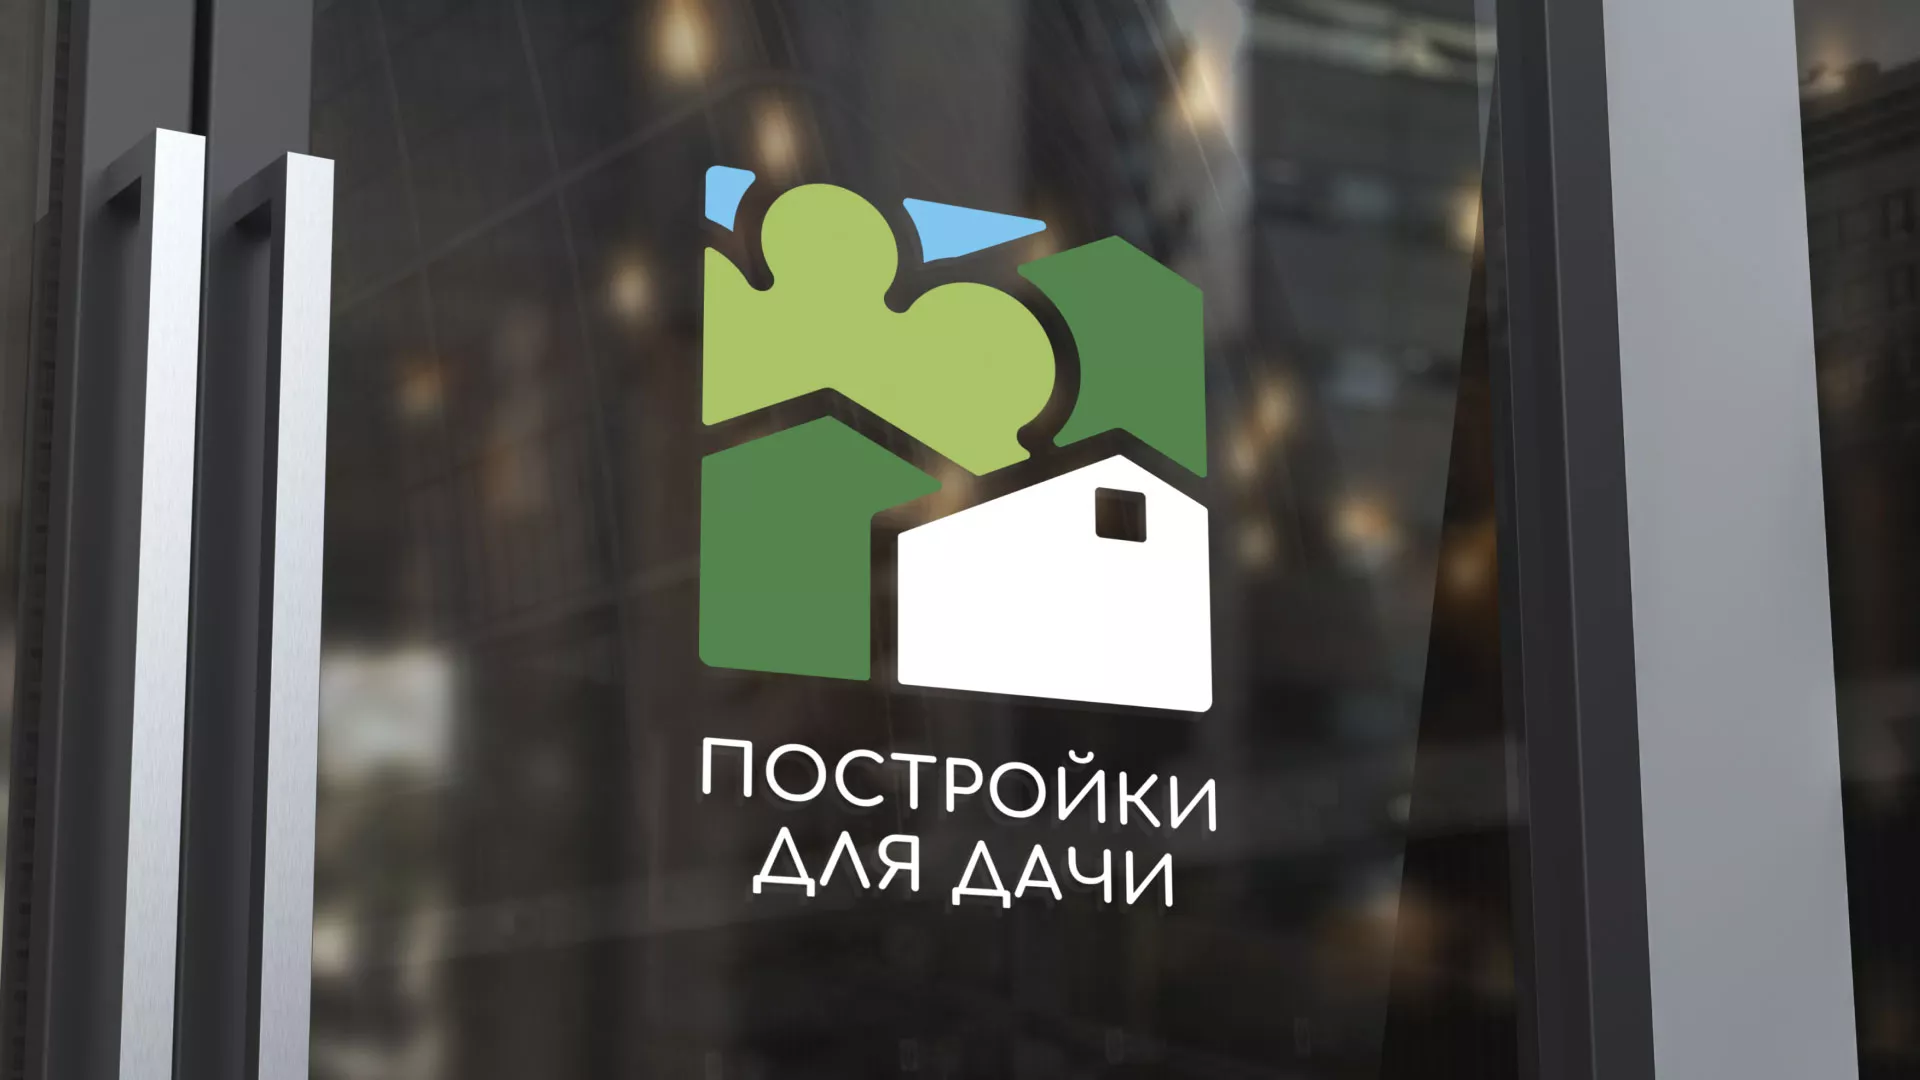 Разработка логотипа в Юрьев-Польском для компании «Постройки для дачи»